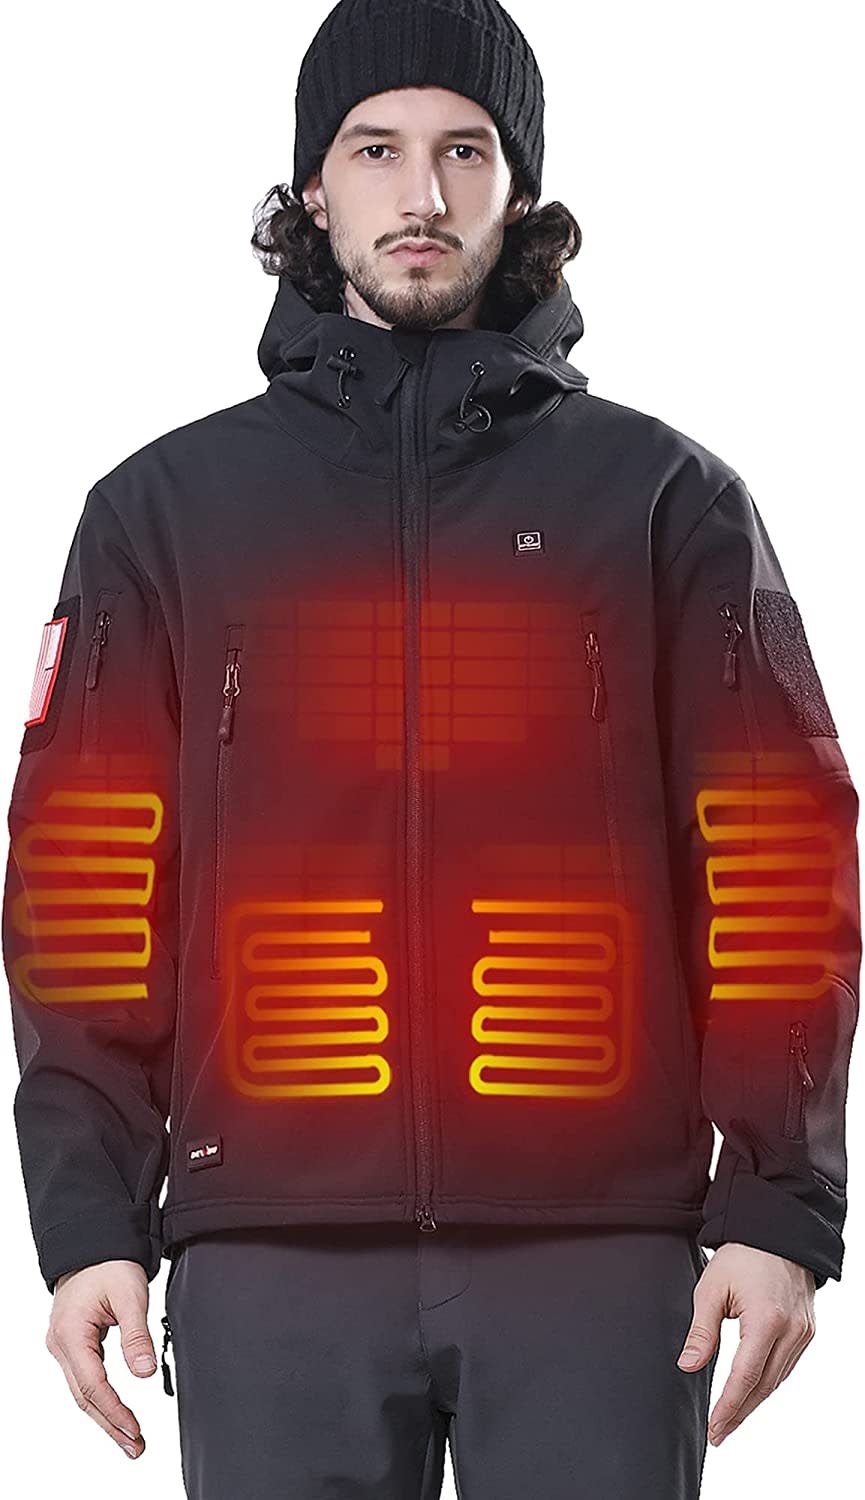 DEWBU Heated Softshell Jacket; best heated jacket, heated jackets